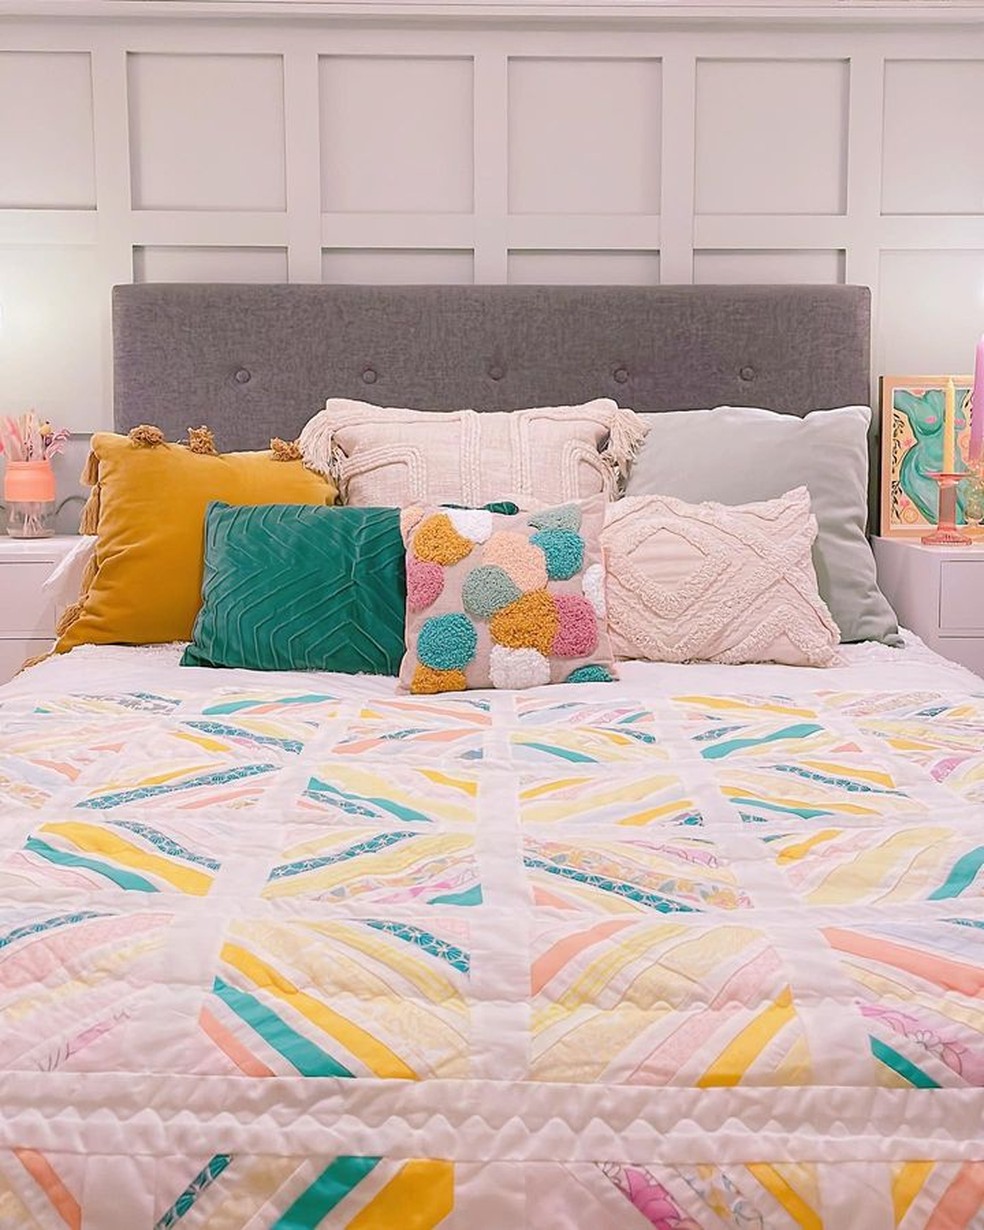 No quarto, roupas de cama, almofadas e outros objetos de decoração trazem a temática colorida — Foto: Instagram / @the_flat_that_rosie_built / Reprodução